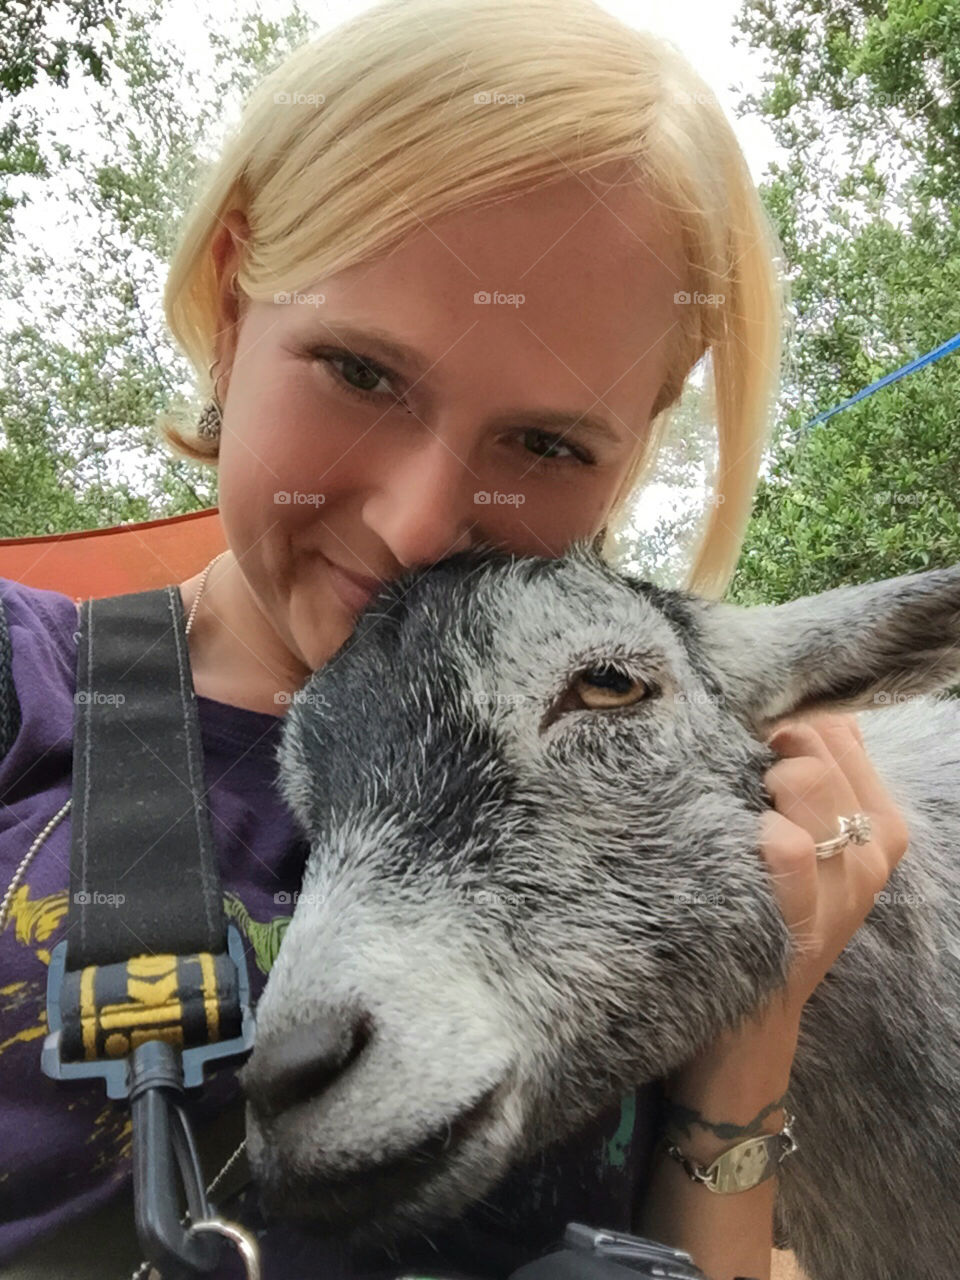 Pygmy goat selfie. I love pygmy goats